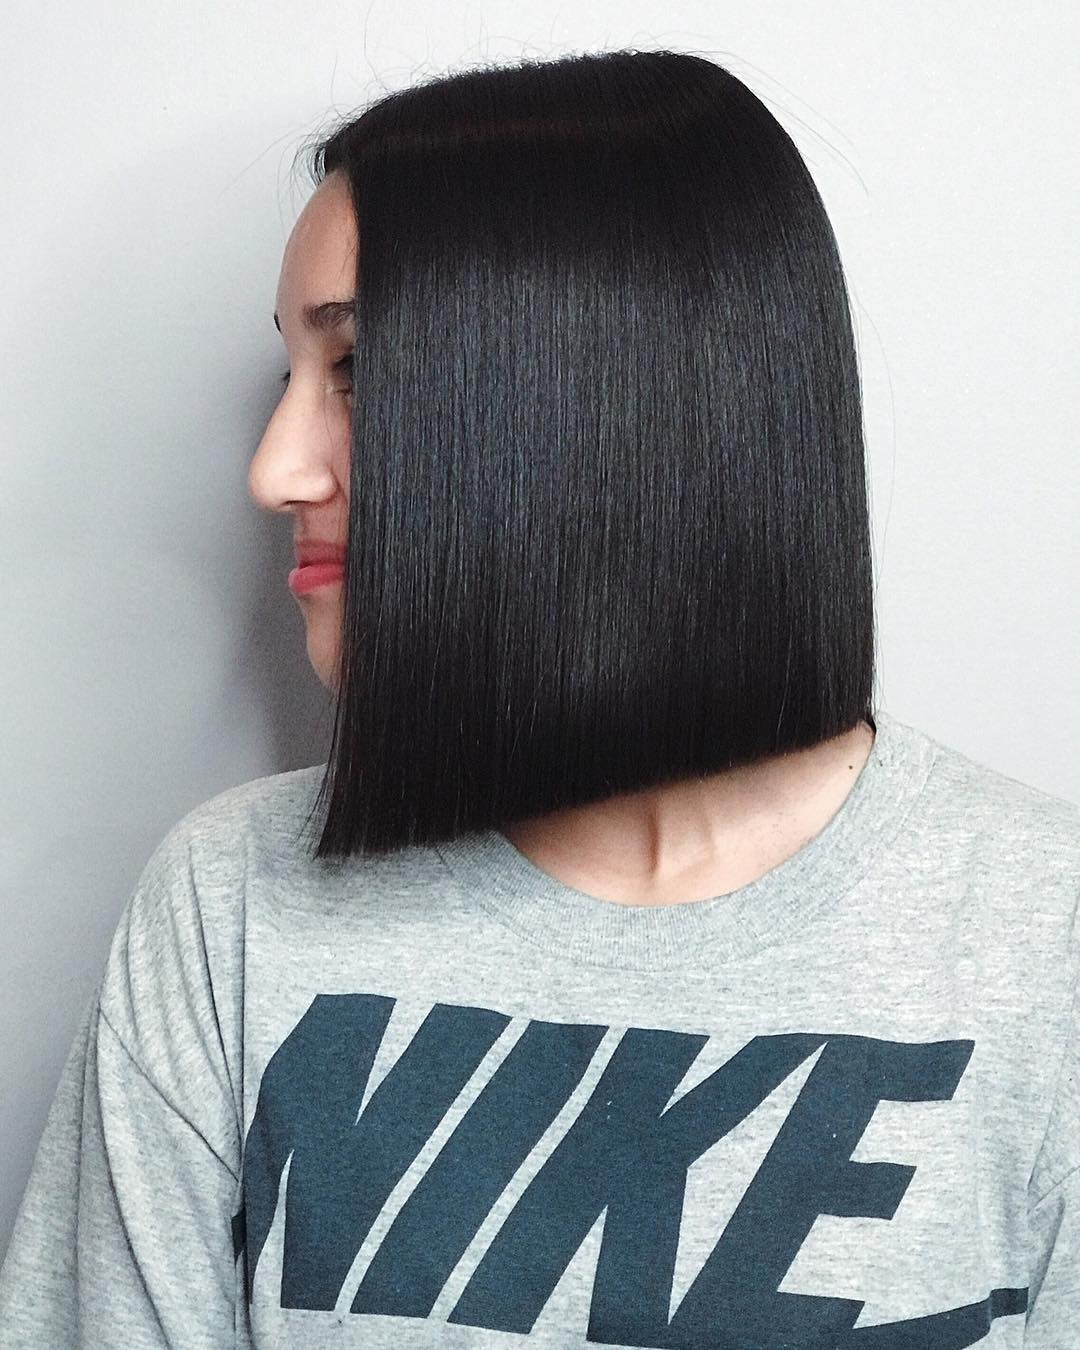 Sleek Black Hairstyle